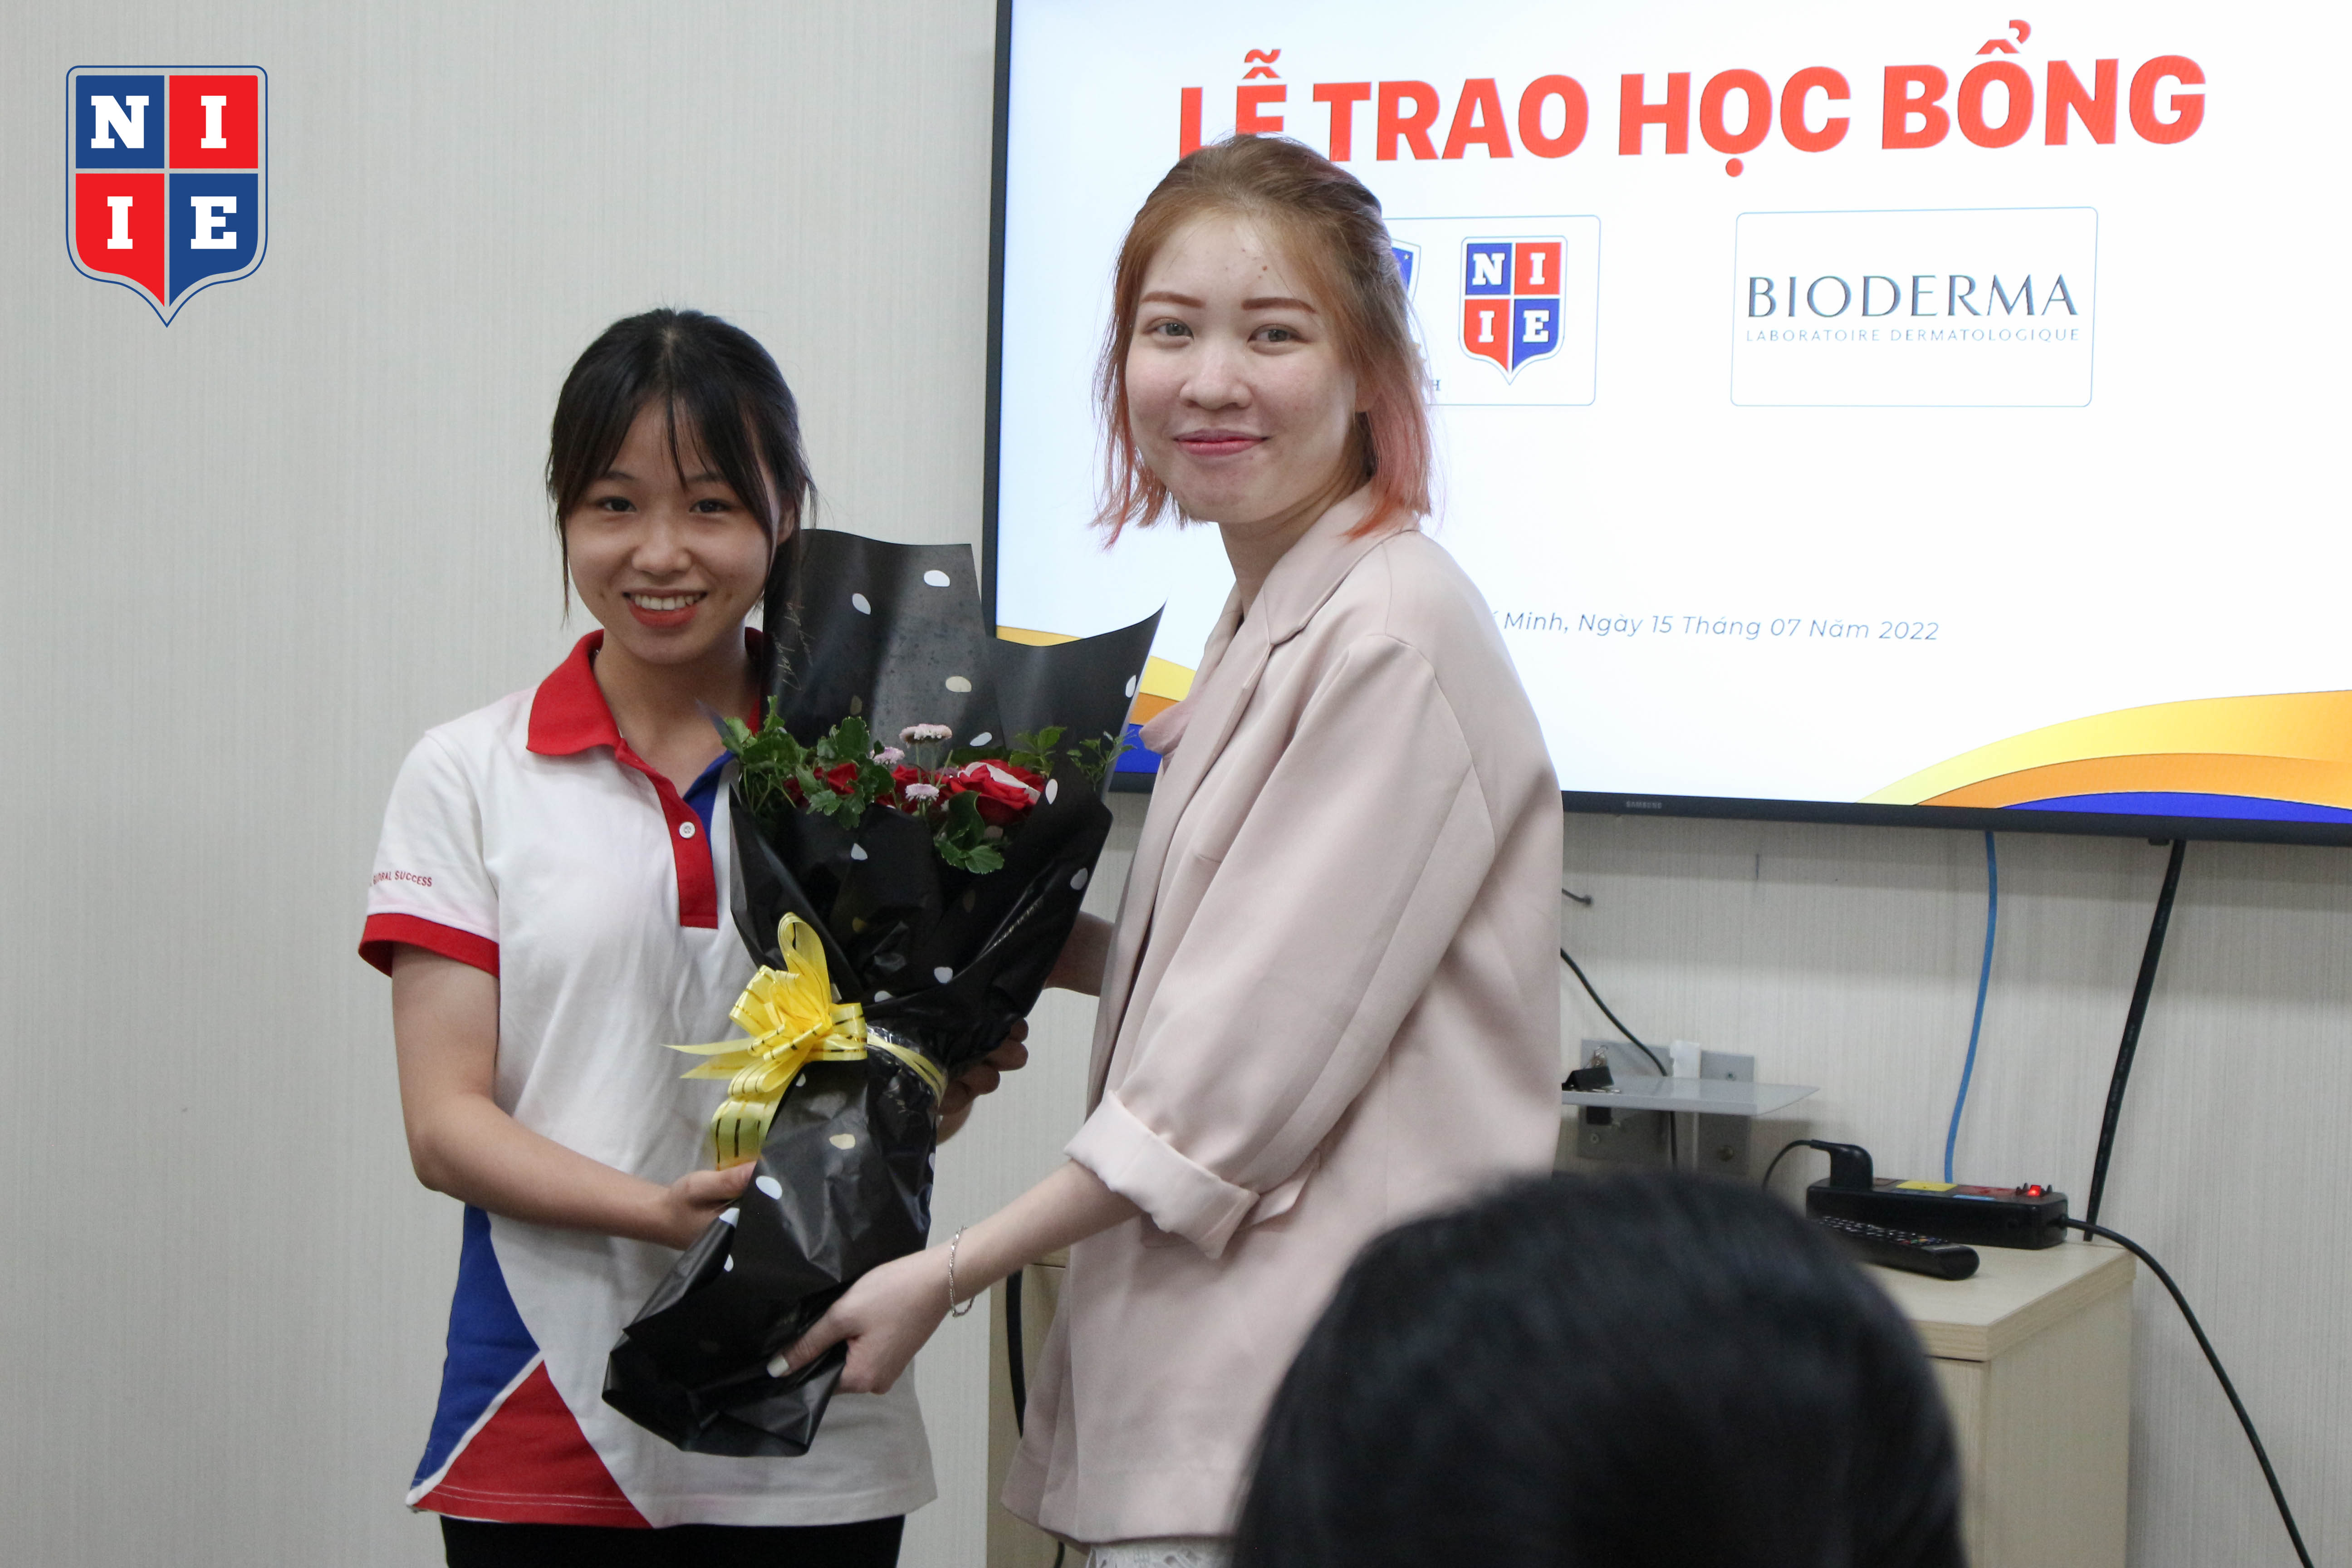 Bạn Võ Thị Mai Hoa, đại diện sinh viên nhận học bổng phát biểu cảm nghĩ và gửi hoa đến ThS. Phạm Hà Ngọc Ánh